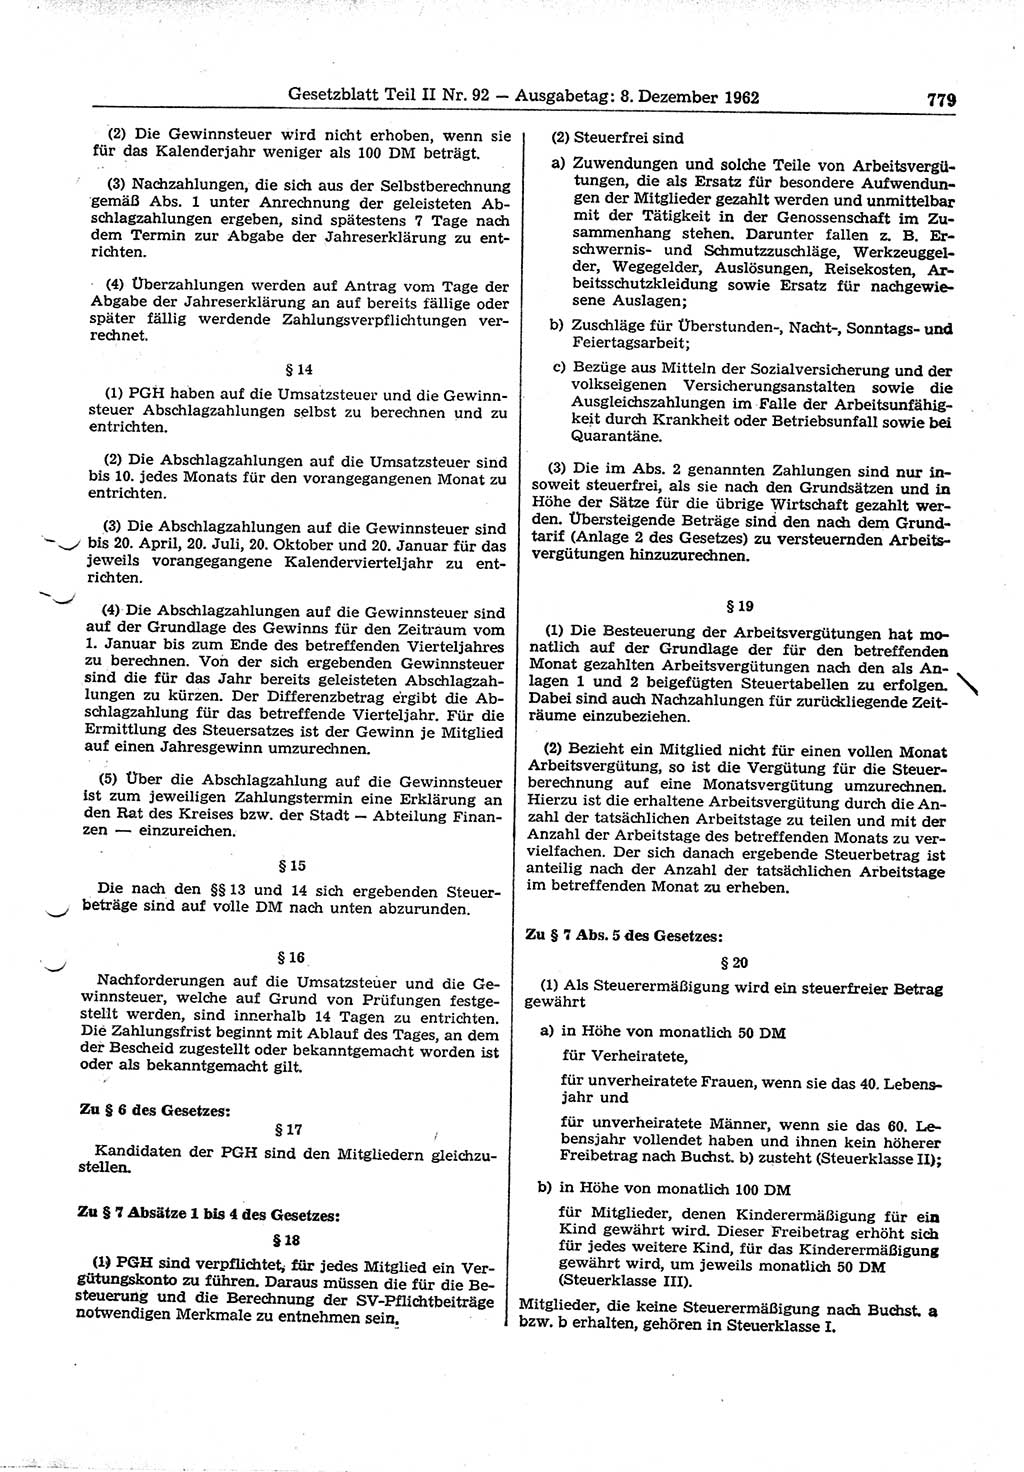 Gesetzblatt (GBl.) der Deutschen Demokratischen Republik (DDR) Teil ⅠⅠ 1962, Seite 779 (GBl. DDR ⅠⅠ 1962, S. 779)